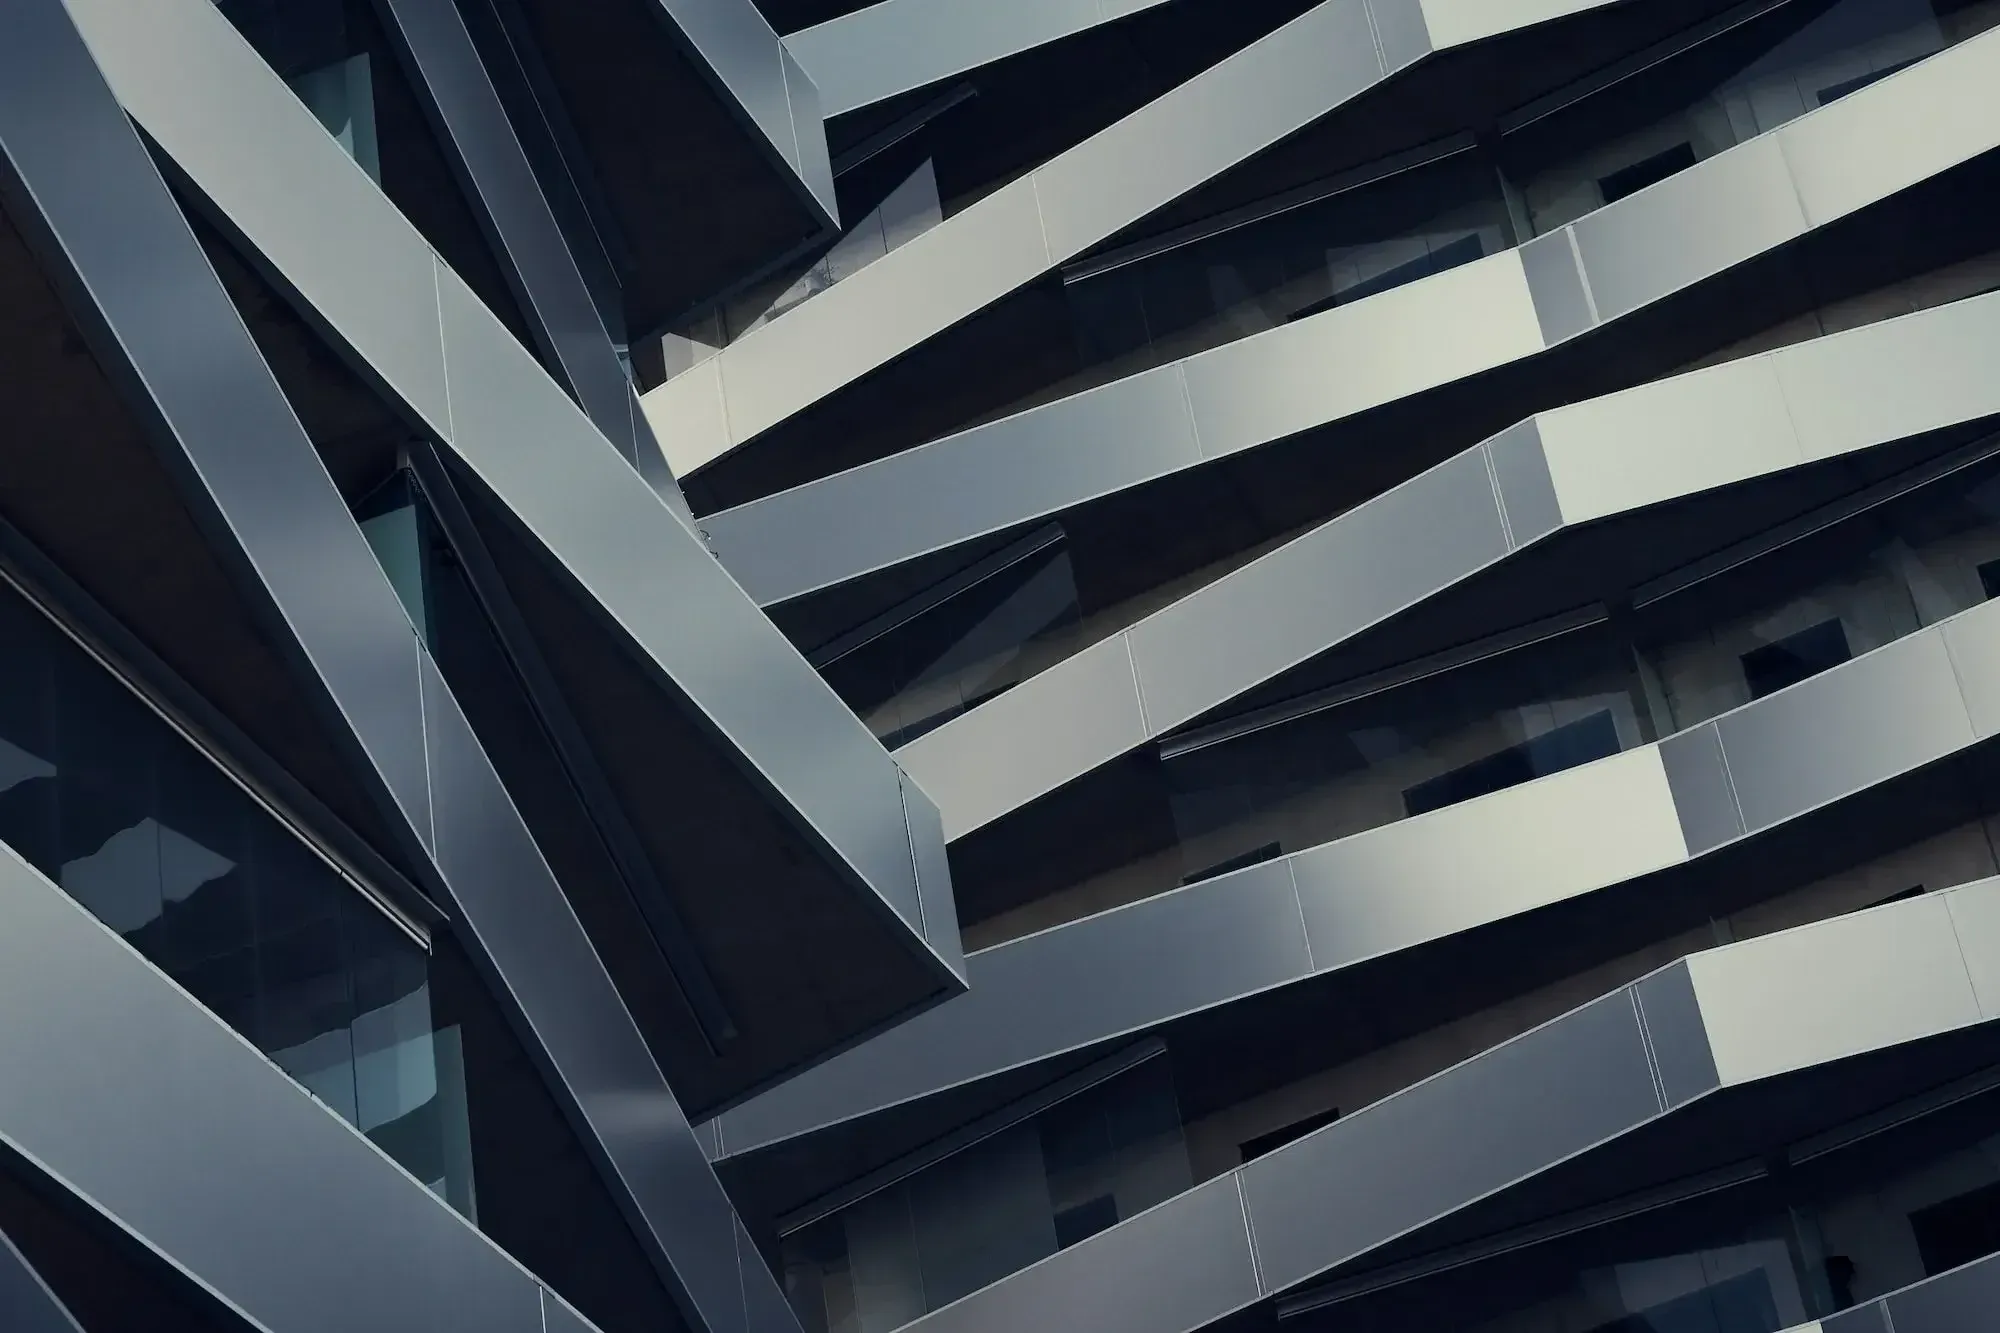 Gebäude mit grauen, polierten Elementen, die ineinandergreifen. Von unten fotografiert.